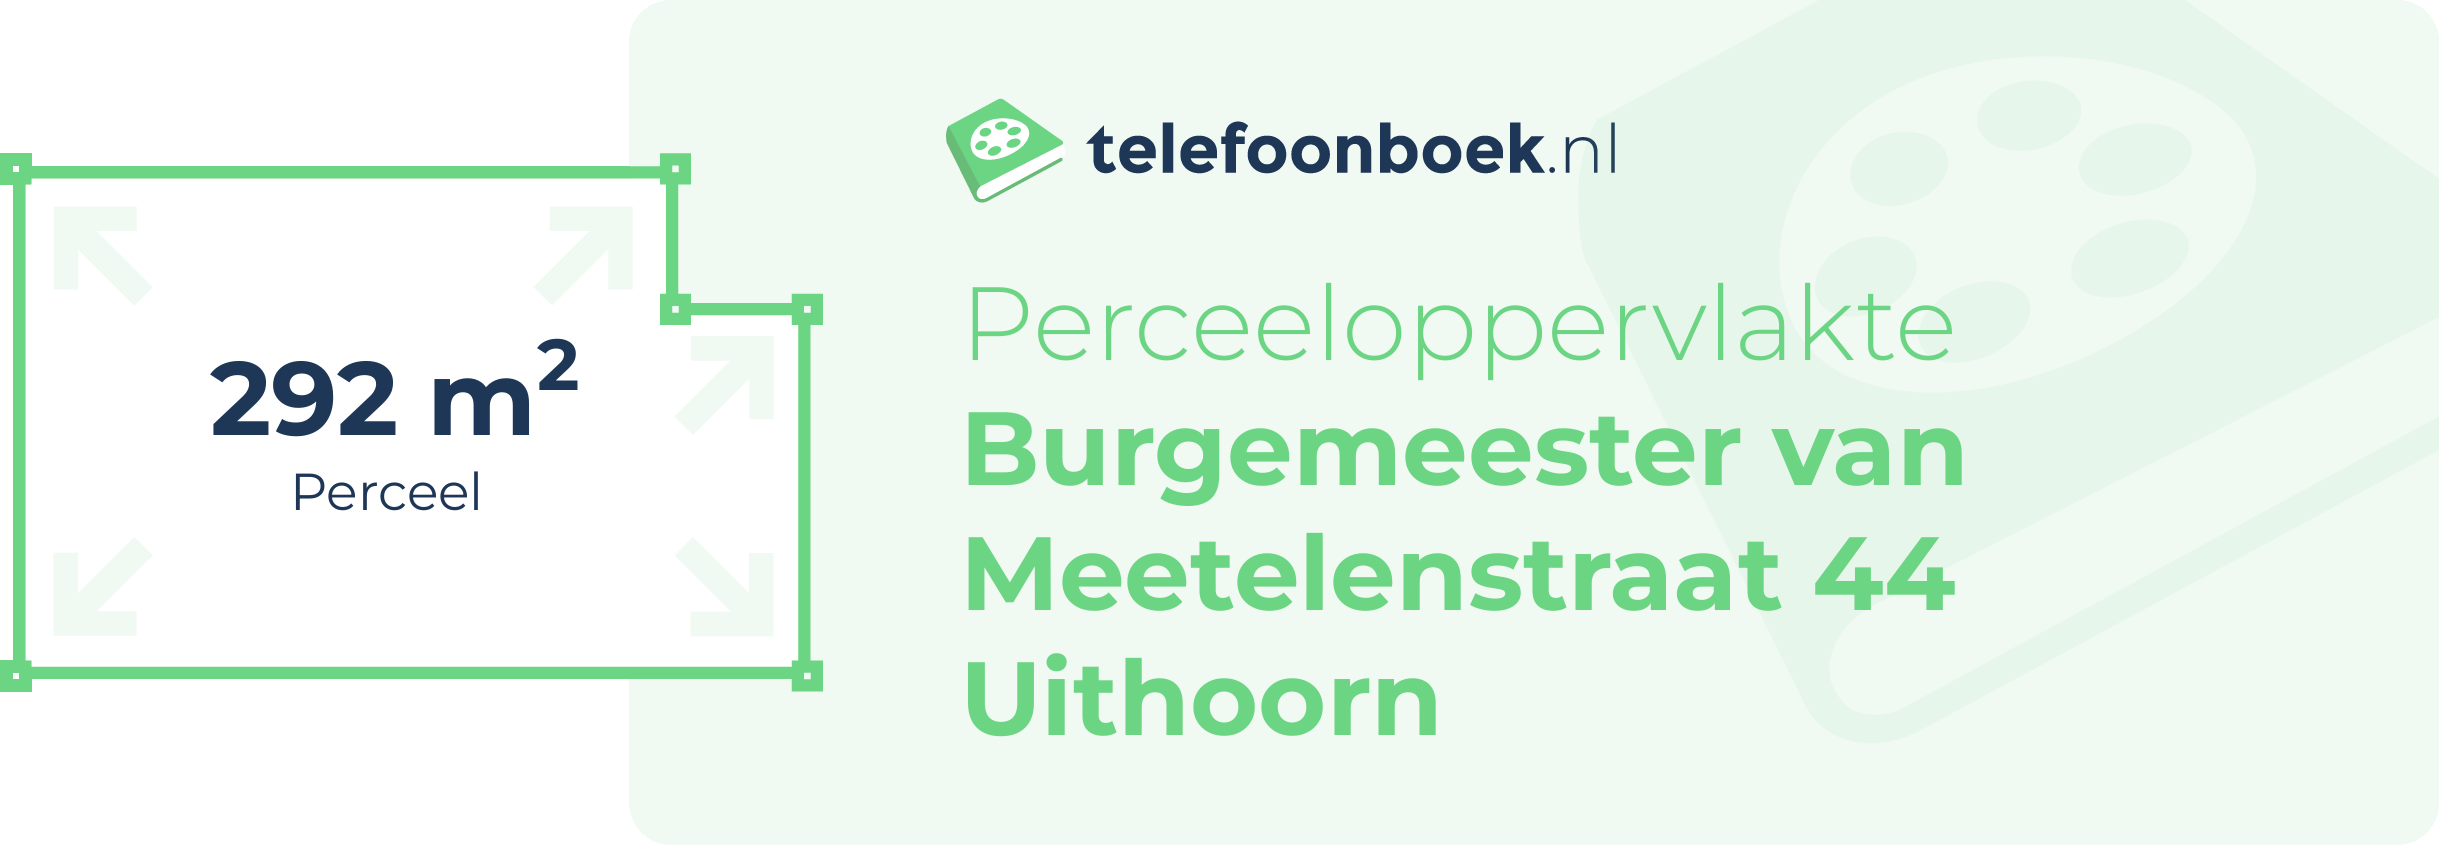 Perceeloppervlakte Burgemeester Van Meetelenstraat 44 Uithoorn